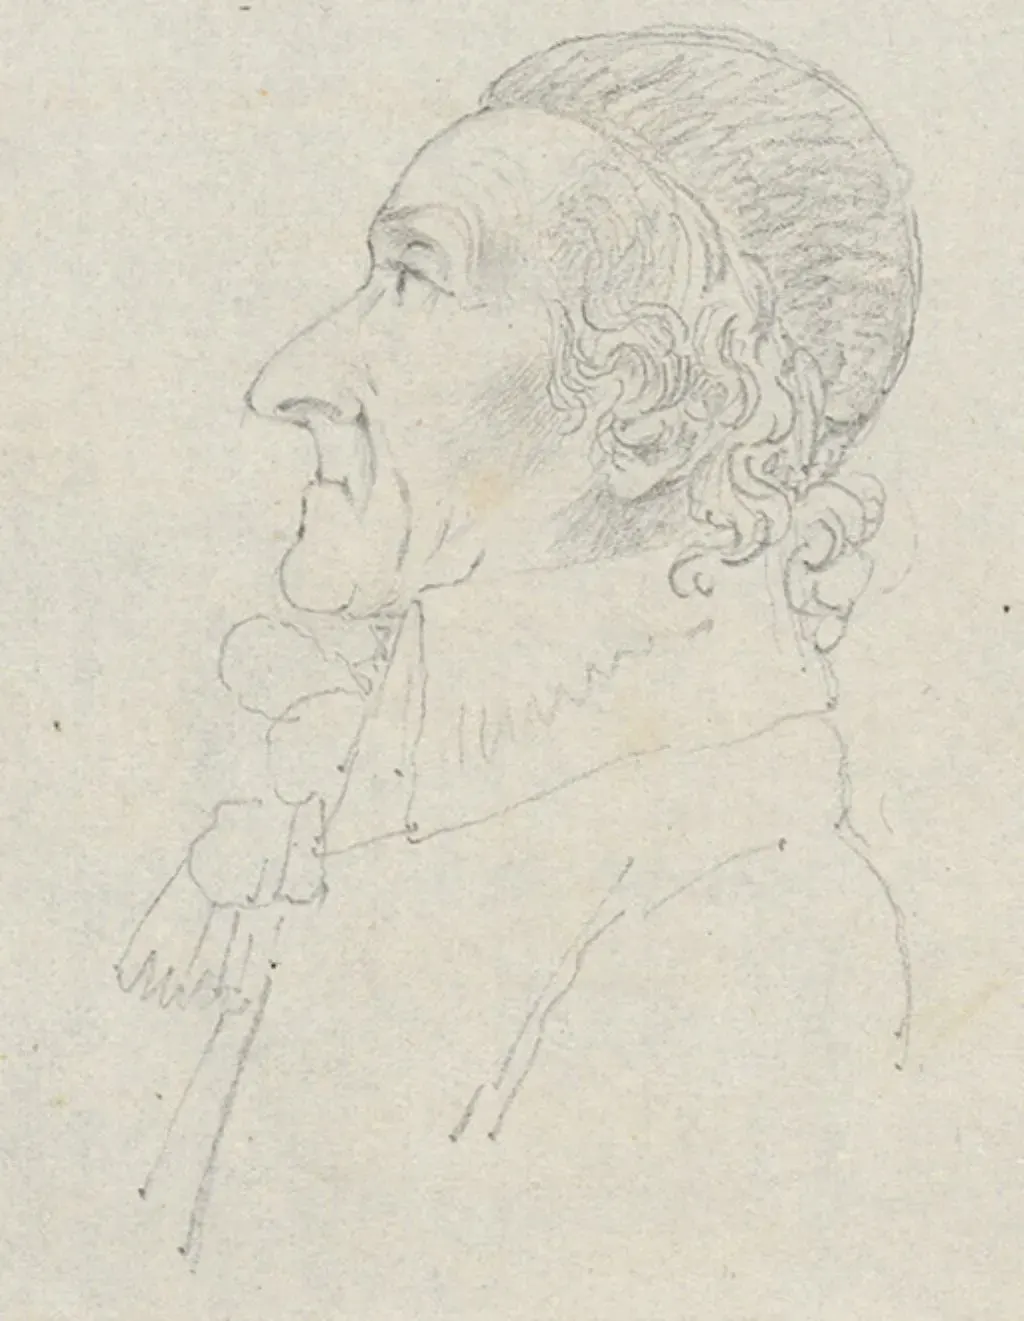 Porträt Lavaters, gezeichnet durch den französischen General Mangin am 3. August 1799 in Basel